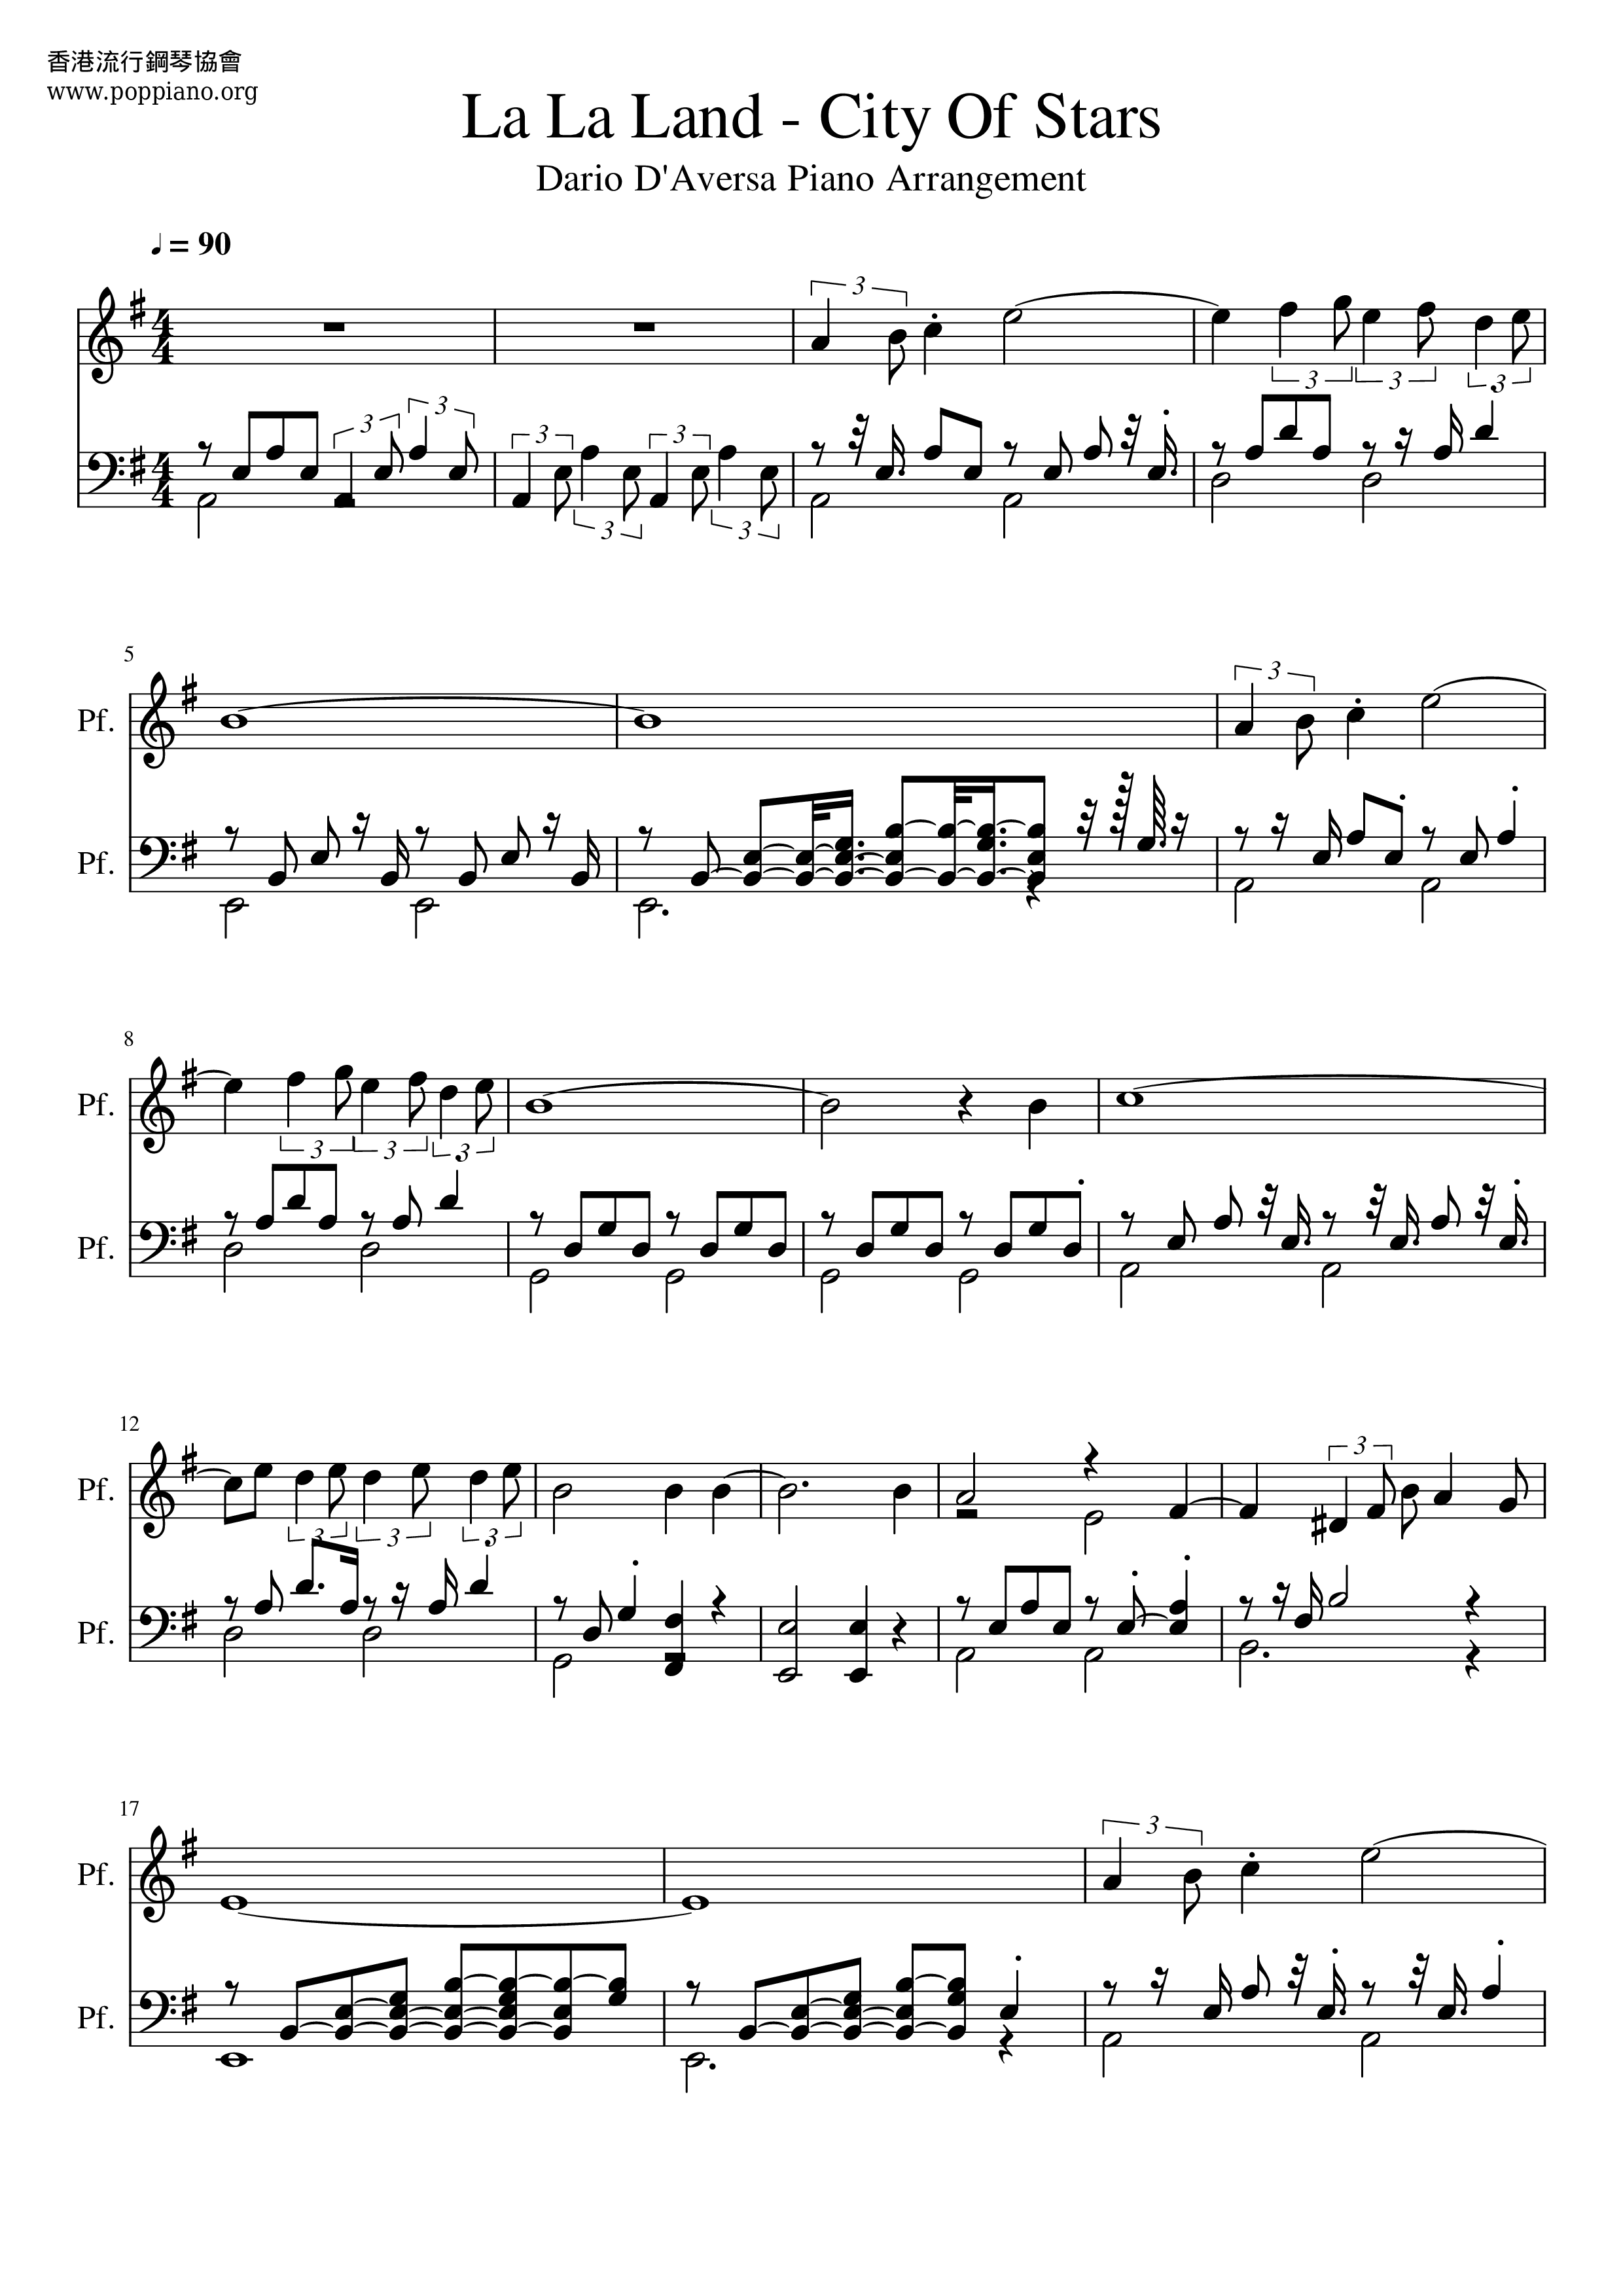 PIANO SOLO SHEET MUSIC] City of Stars From La La Land : Musicalibra